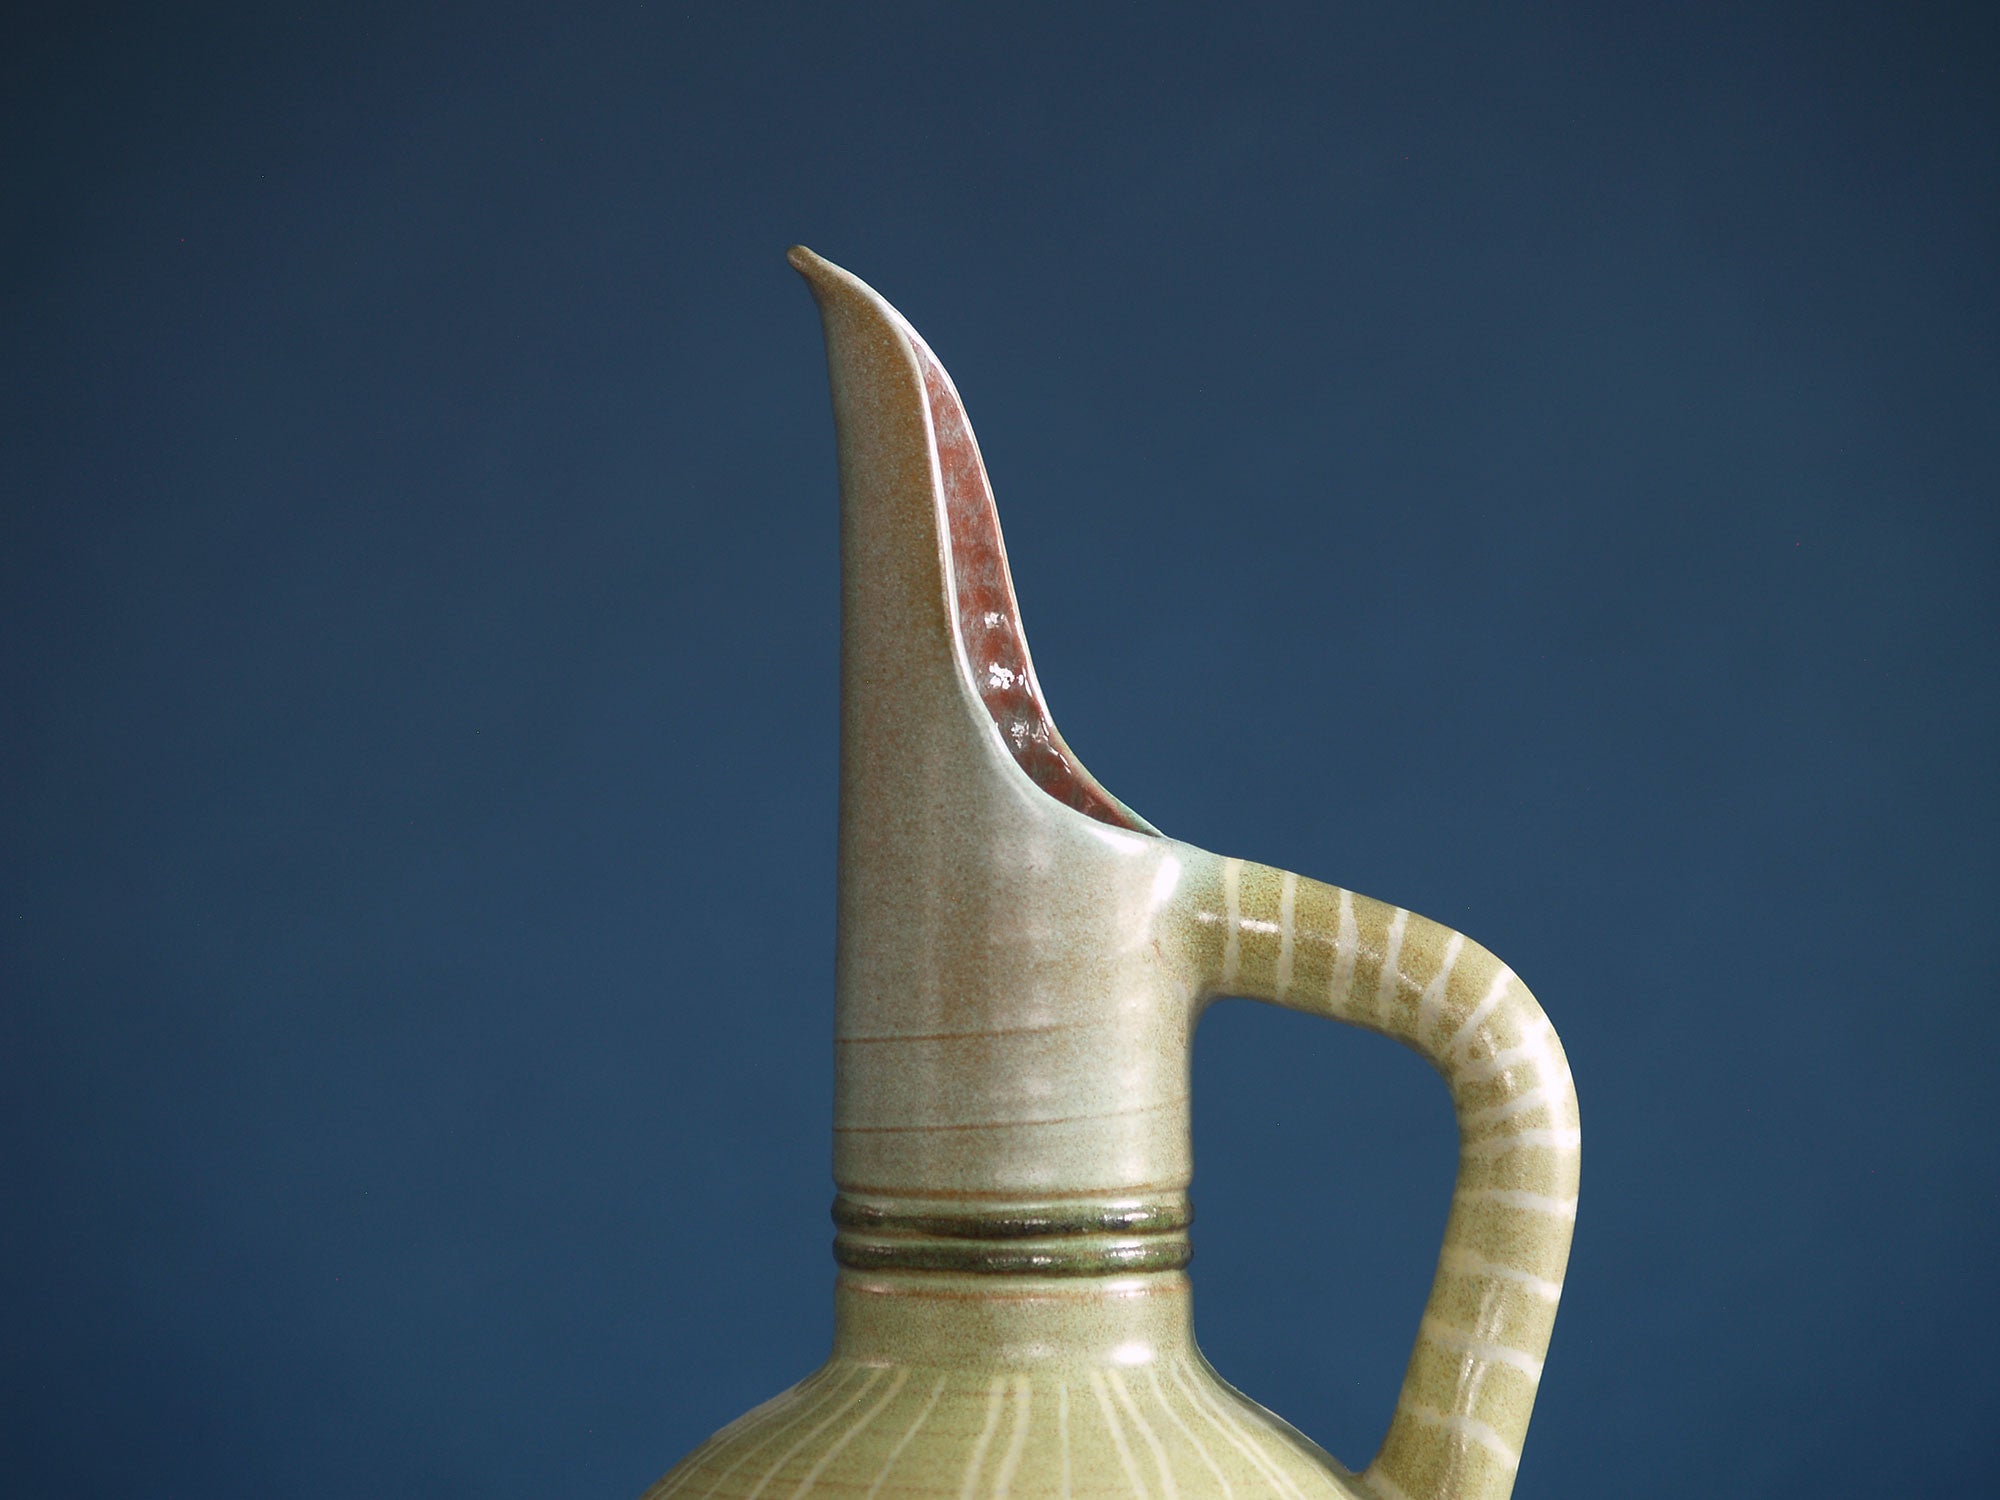 Vase Horus de Fernand Lacaf, France (1957)..Horus vase by Fernand Lacaf, France (1957)